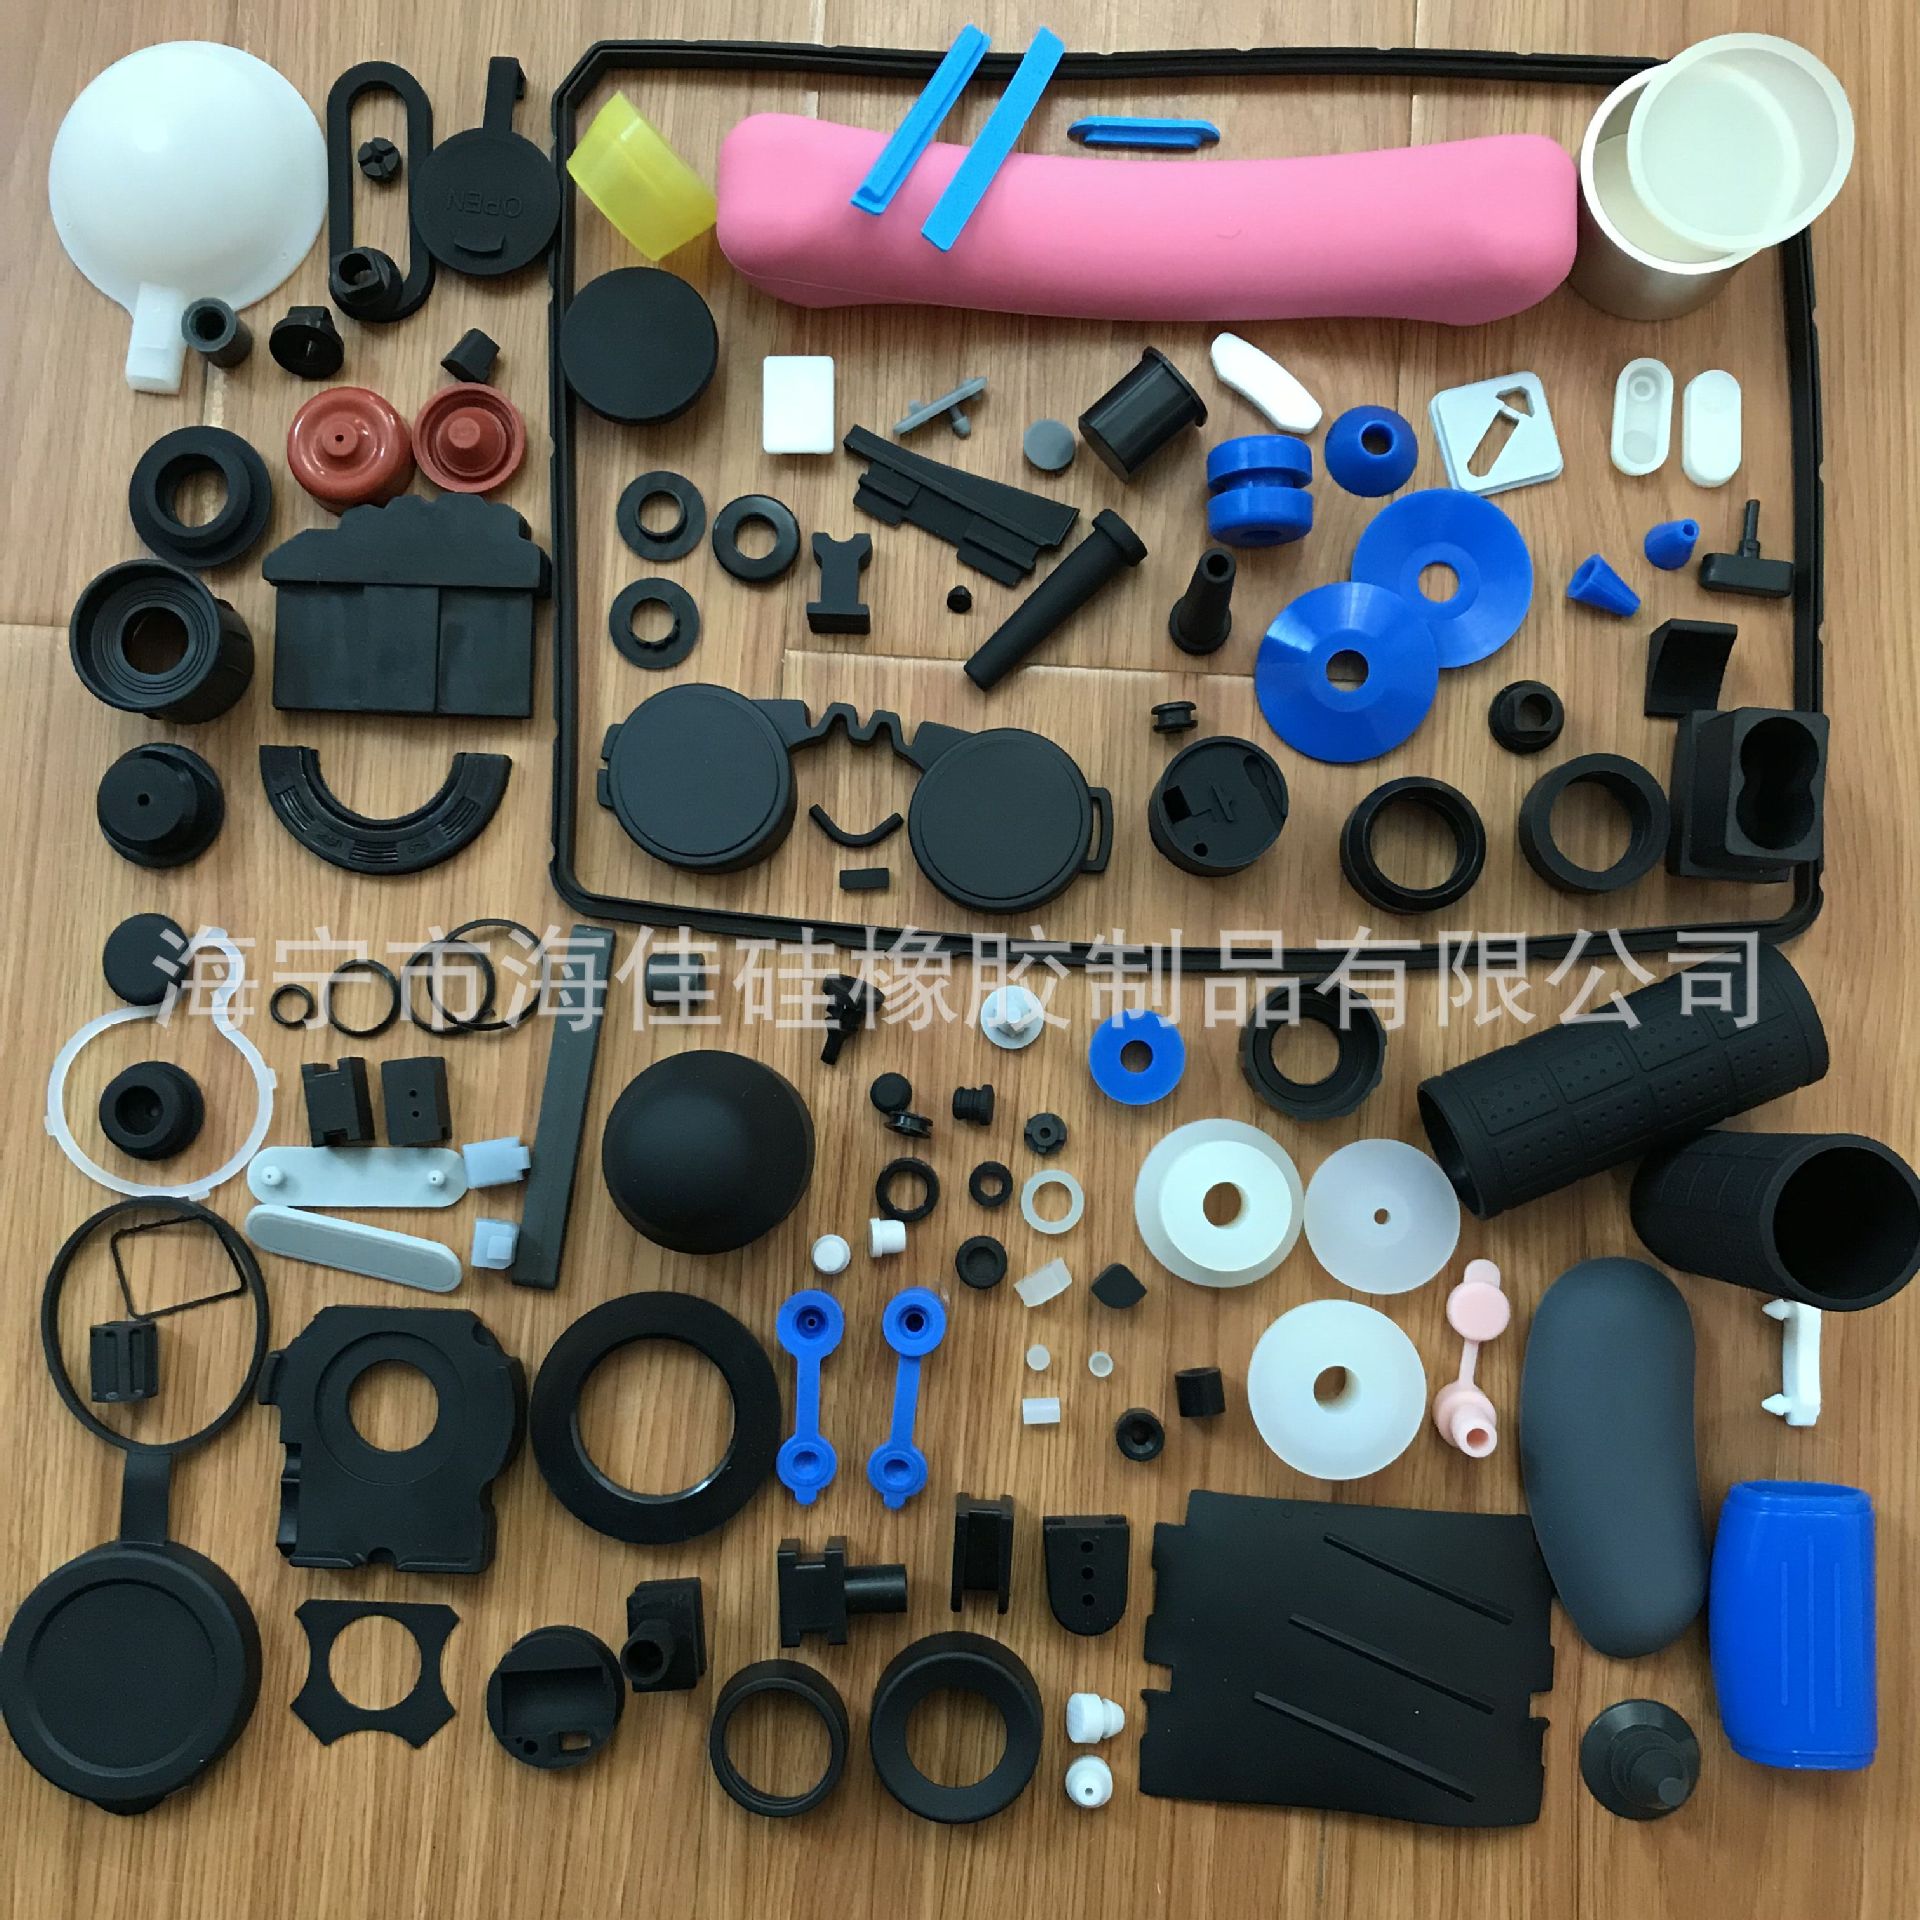 硅胶硅橡胶制品厂家公司欢迎上海广州深圳苏州泰州杭州无锡武汉客